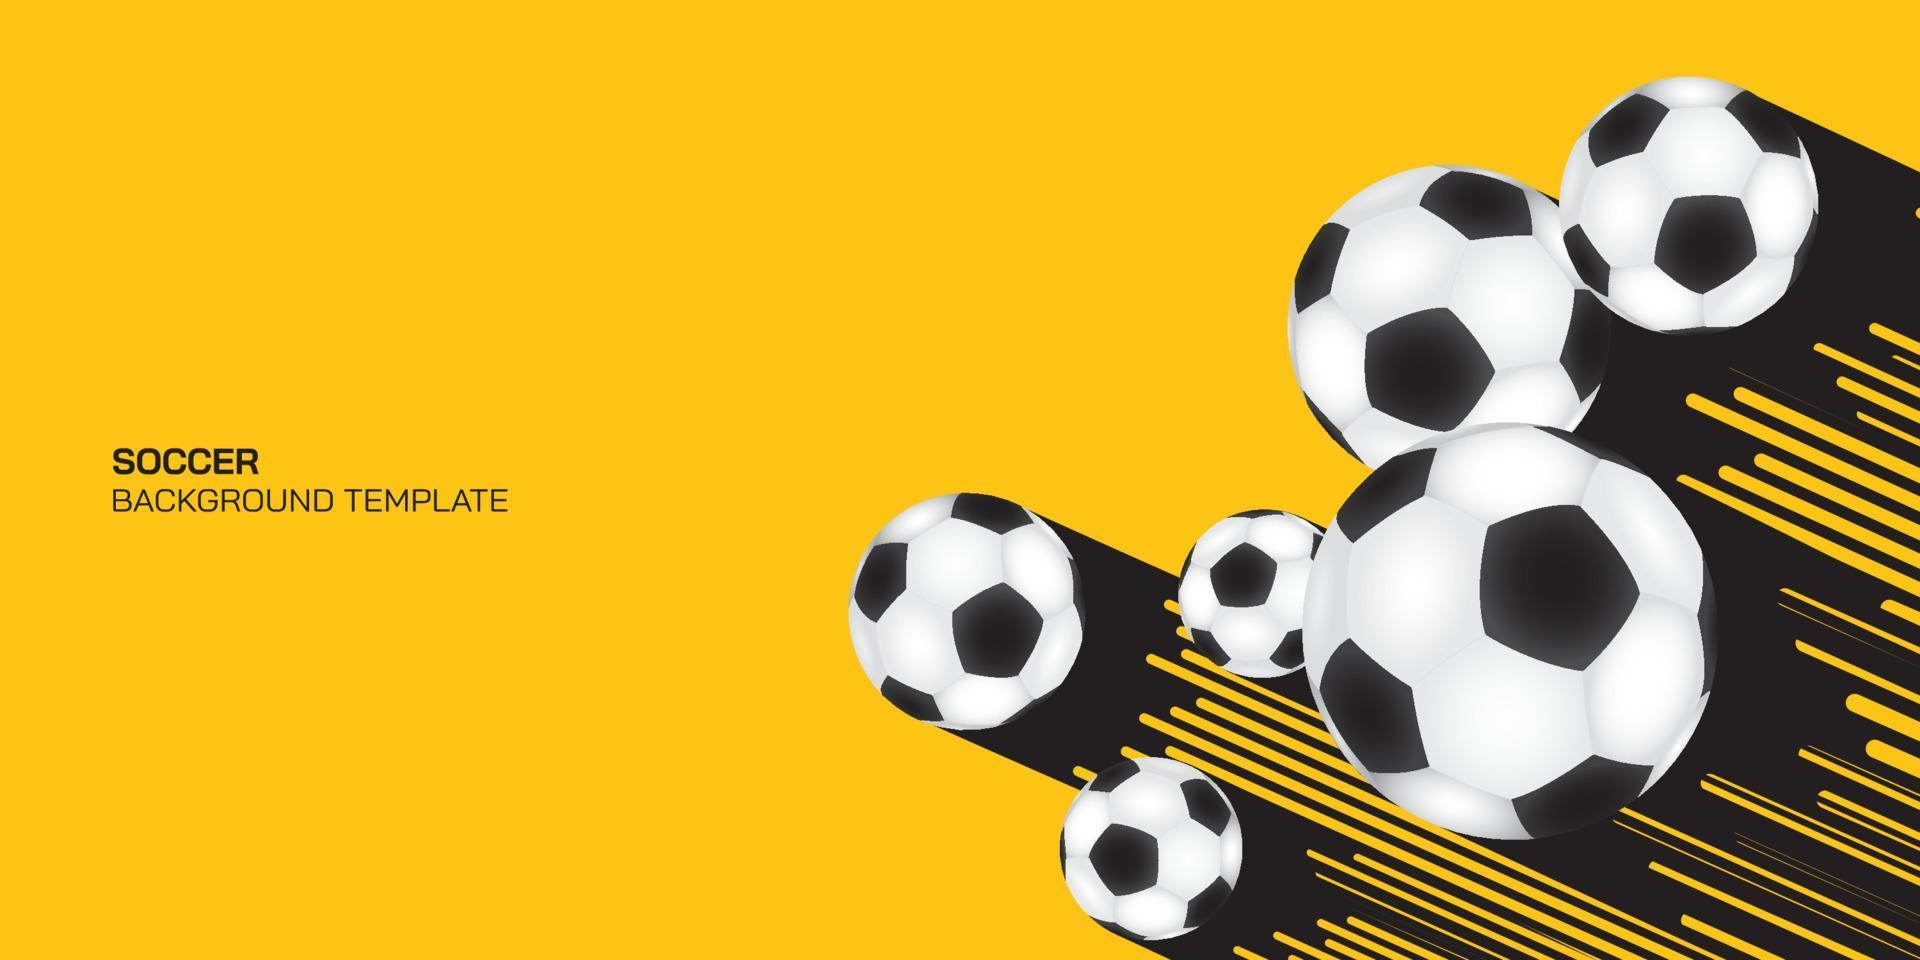 ballons de football comme comètes sur fond jaune avec espace vide. tournoi de football, football, fond de concept d'affiche de sport. vecteur